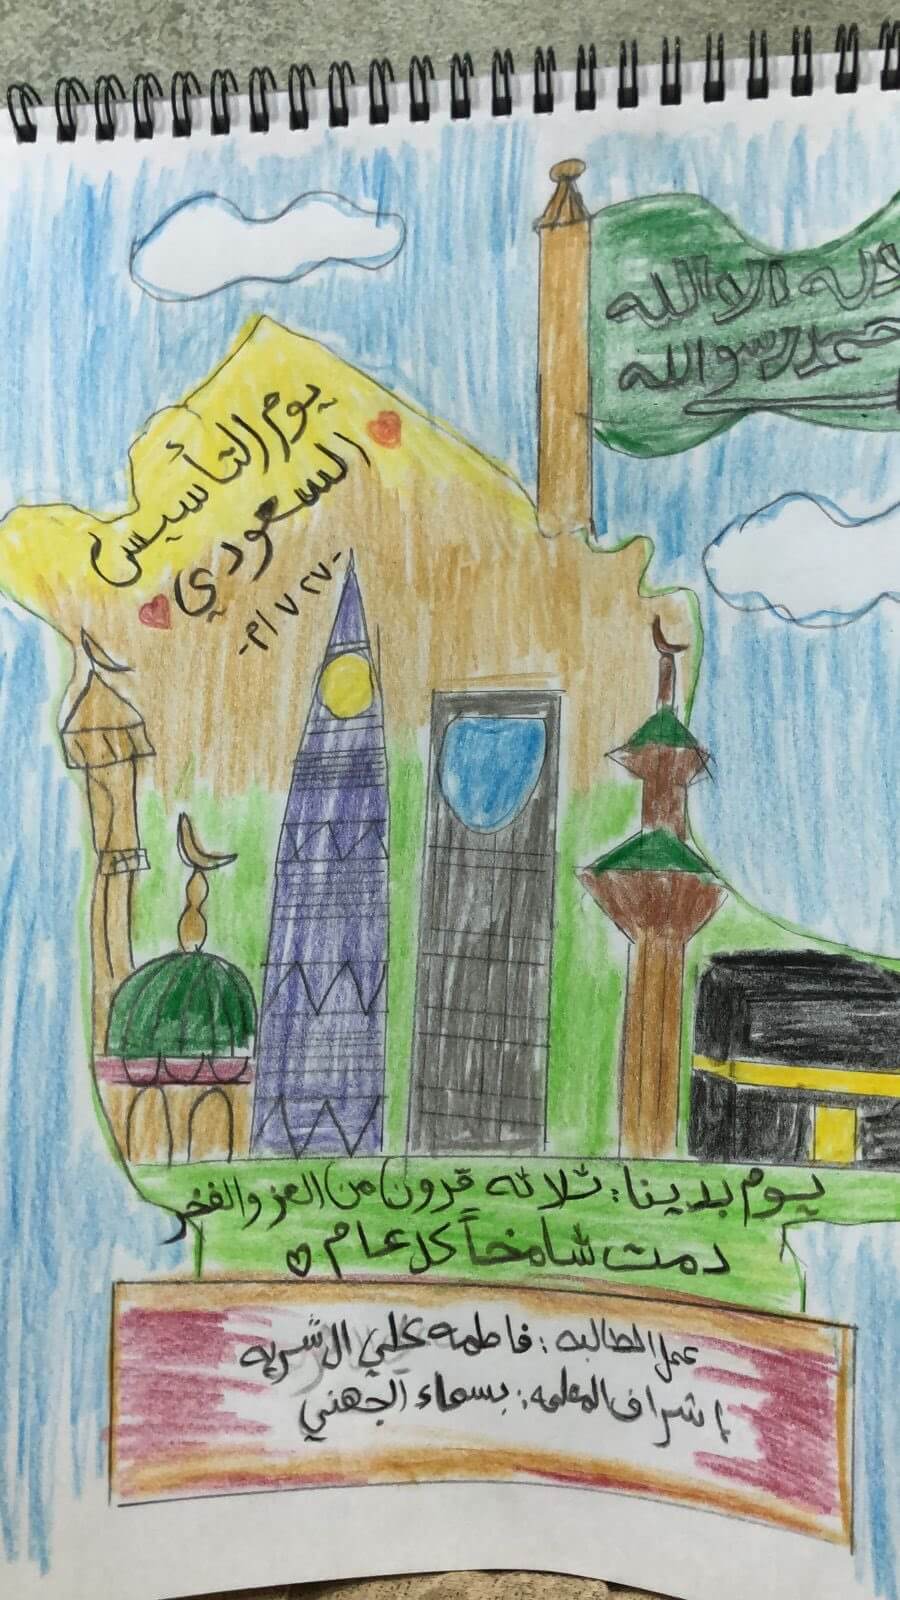 رسمه رائعة جدًا عن يوم التأسيس السعودي فيه اجمل ما يوجد في المملكة من الكعبة المشرفة والمسجد النبوي